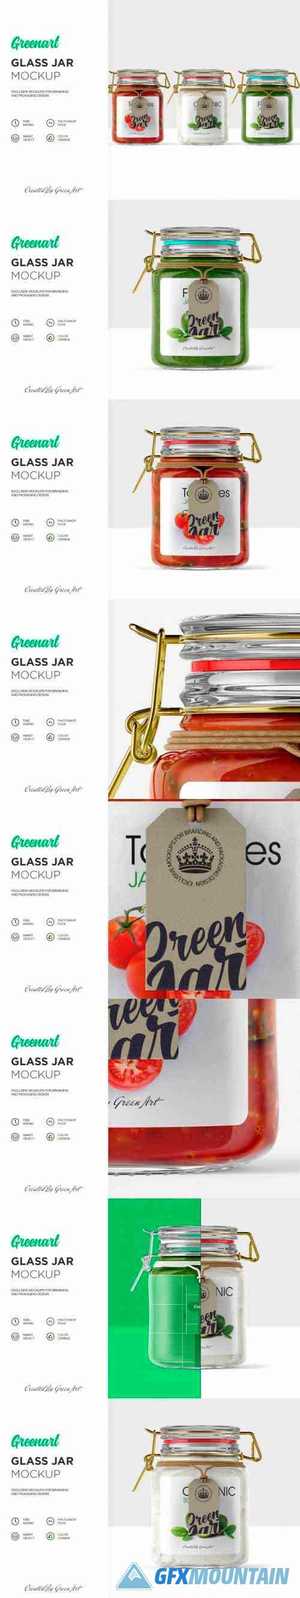 Clear Glass Jar Mockup 2342720